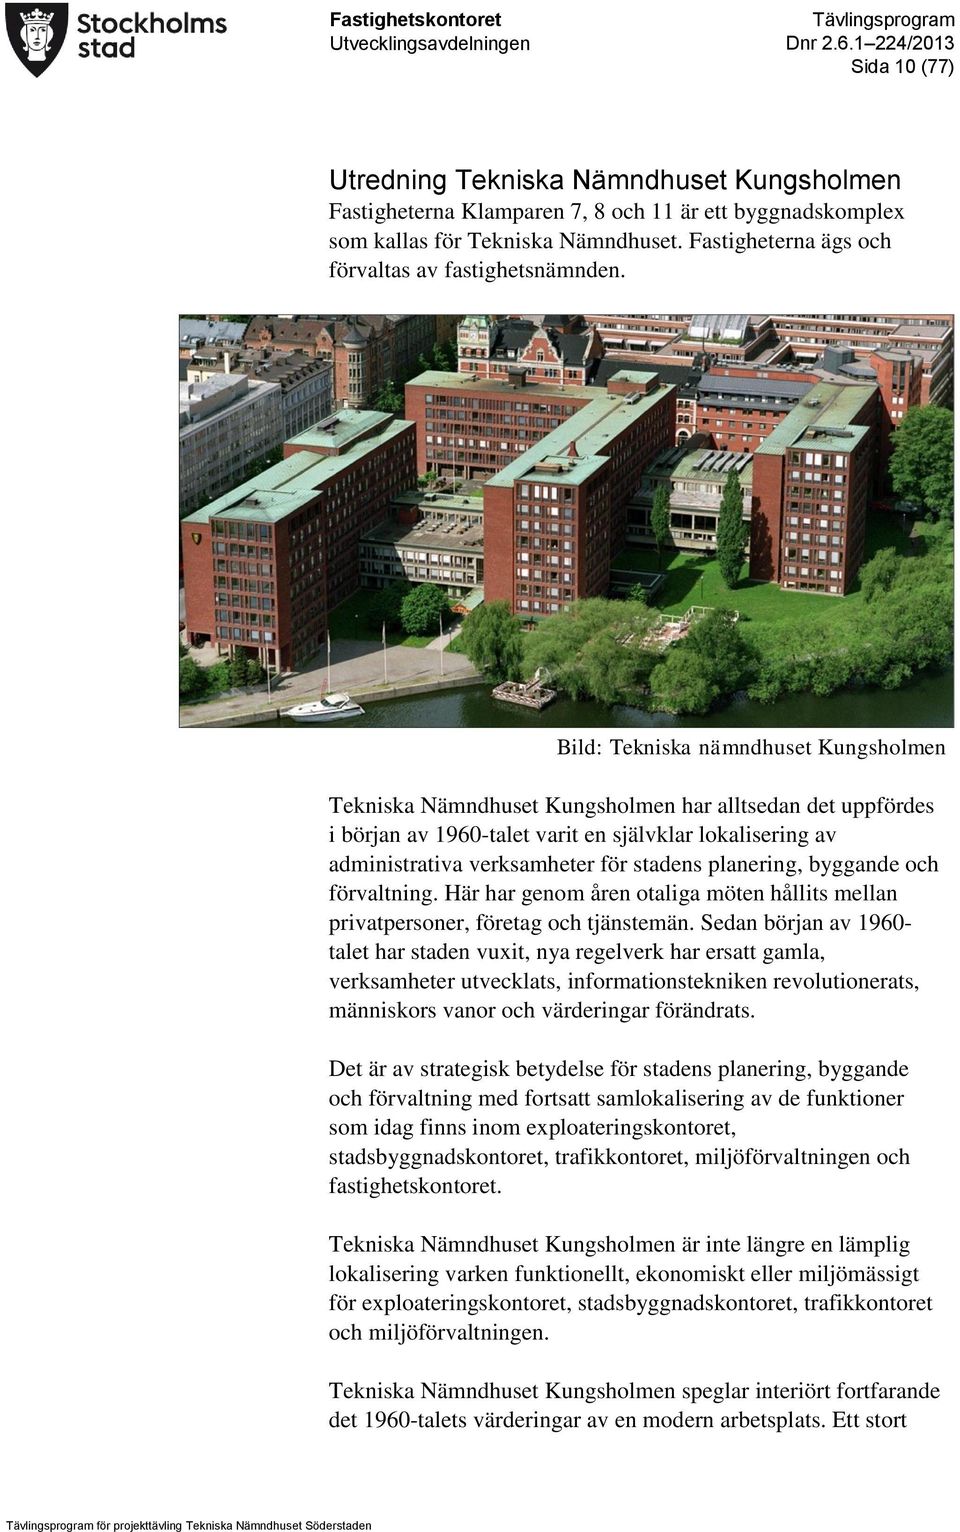 Bild: Tekniska nämndhuset Kungsholmen Tekniska Nämndhuset Kungsholmen har alltsedan det uppfördes i början av 1960-talet varit en självklar lokalisering av administrativa verksamheter för stadens